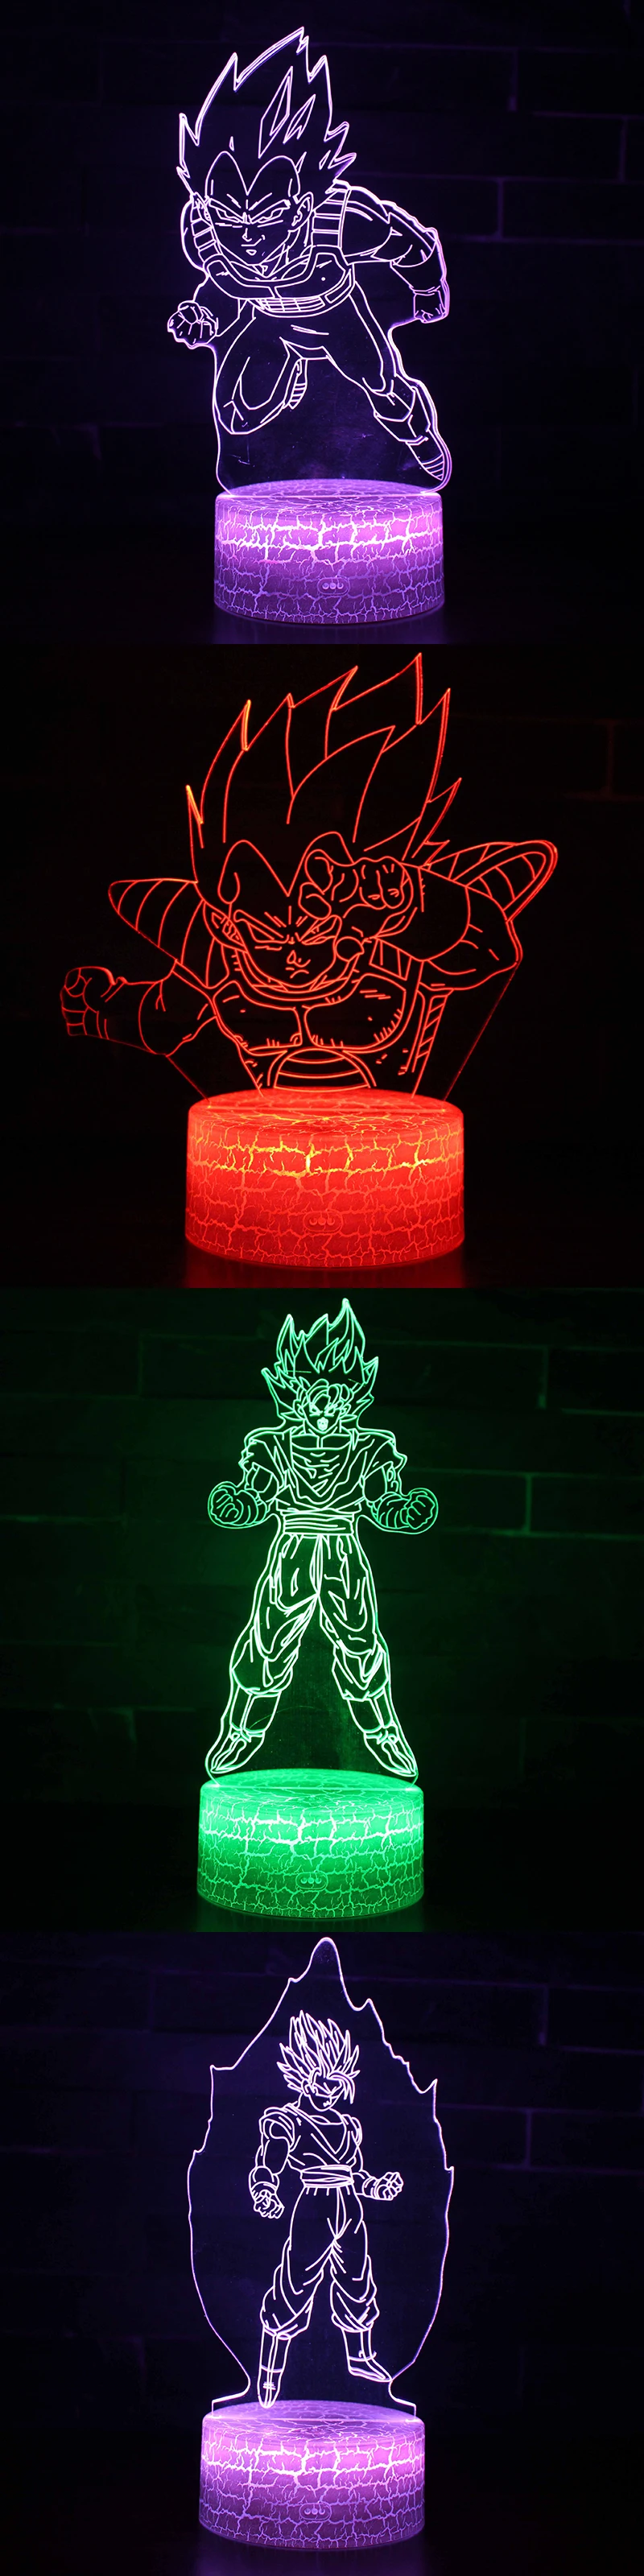 Dragon Ball Супер Saiyan Бог экшен-фигурка Гоку 3D иллюзия настольная лампа 7 цветов меняющийся ночник для мальчиков детские подарки для малышей